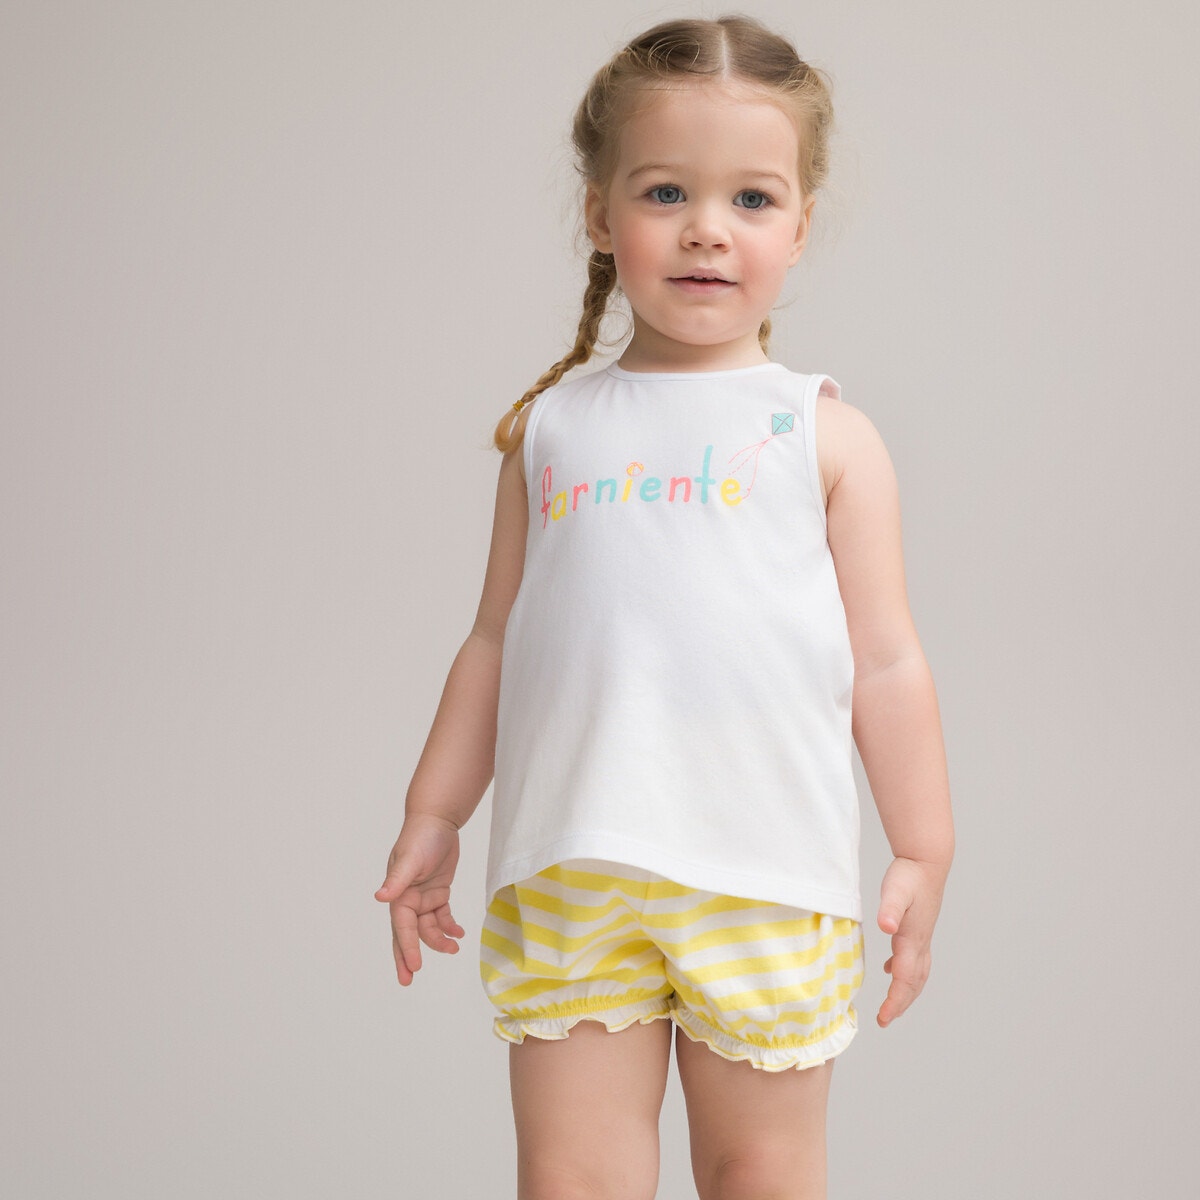 ΠΑΙΔΙ | Παντελόνια Σύνολο μπλούζα και φουφούλα από οργανικό βαμβάκι, 1 μηνός - 4 ετών